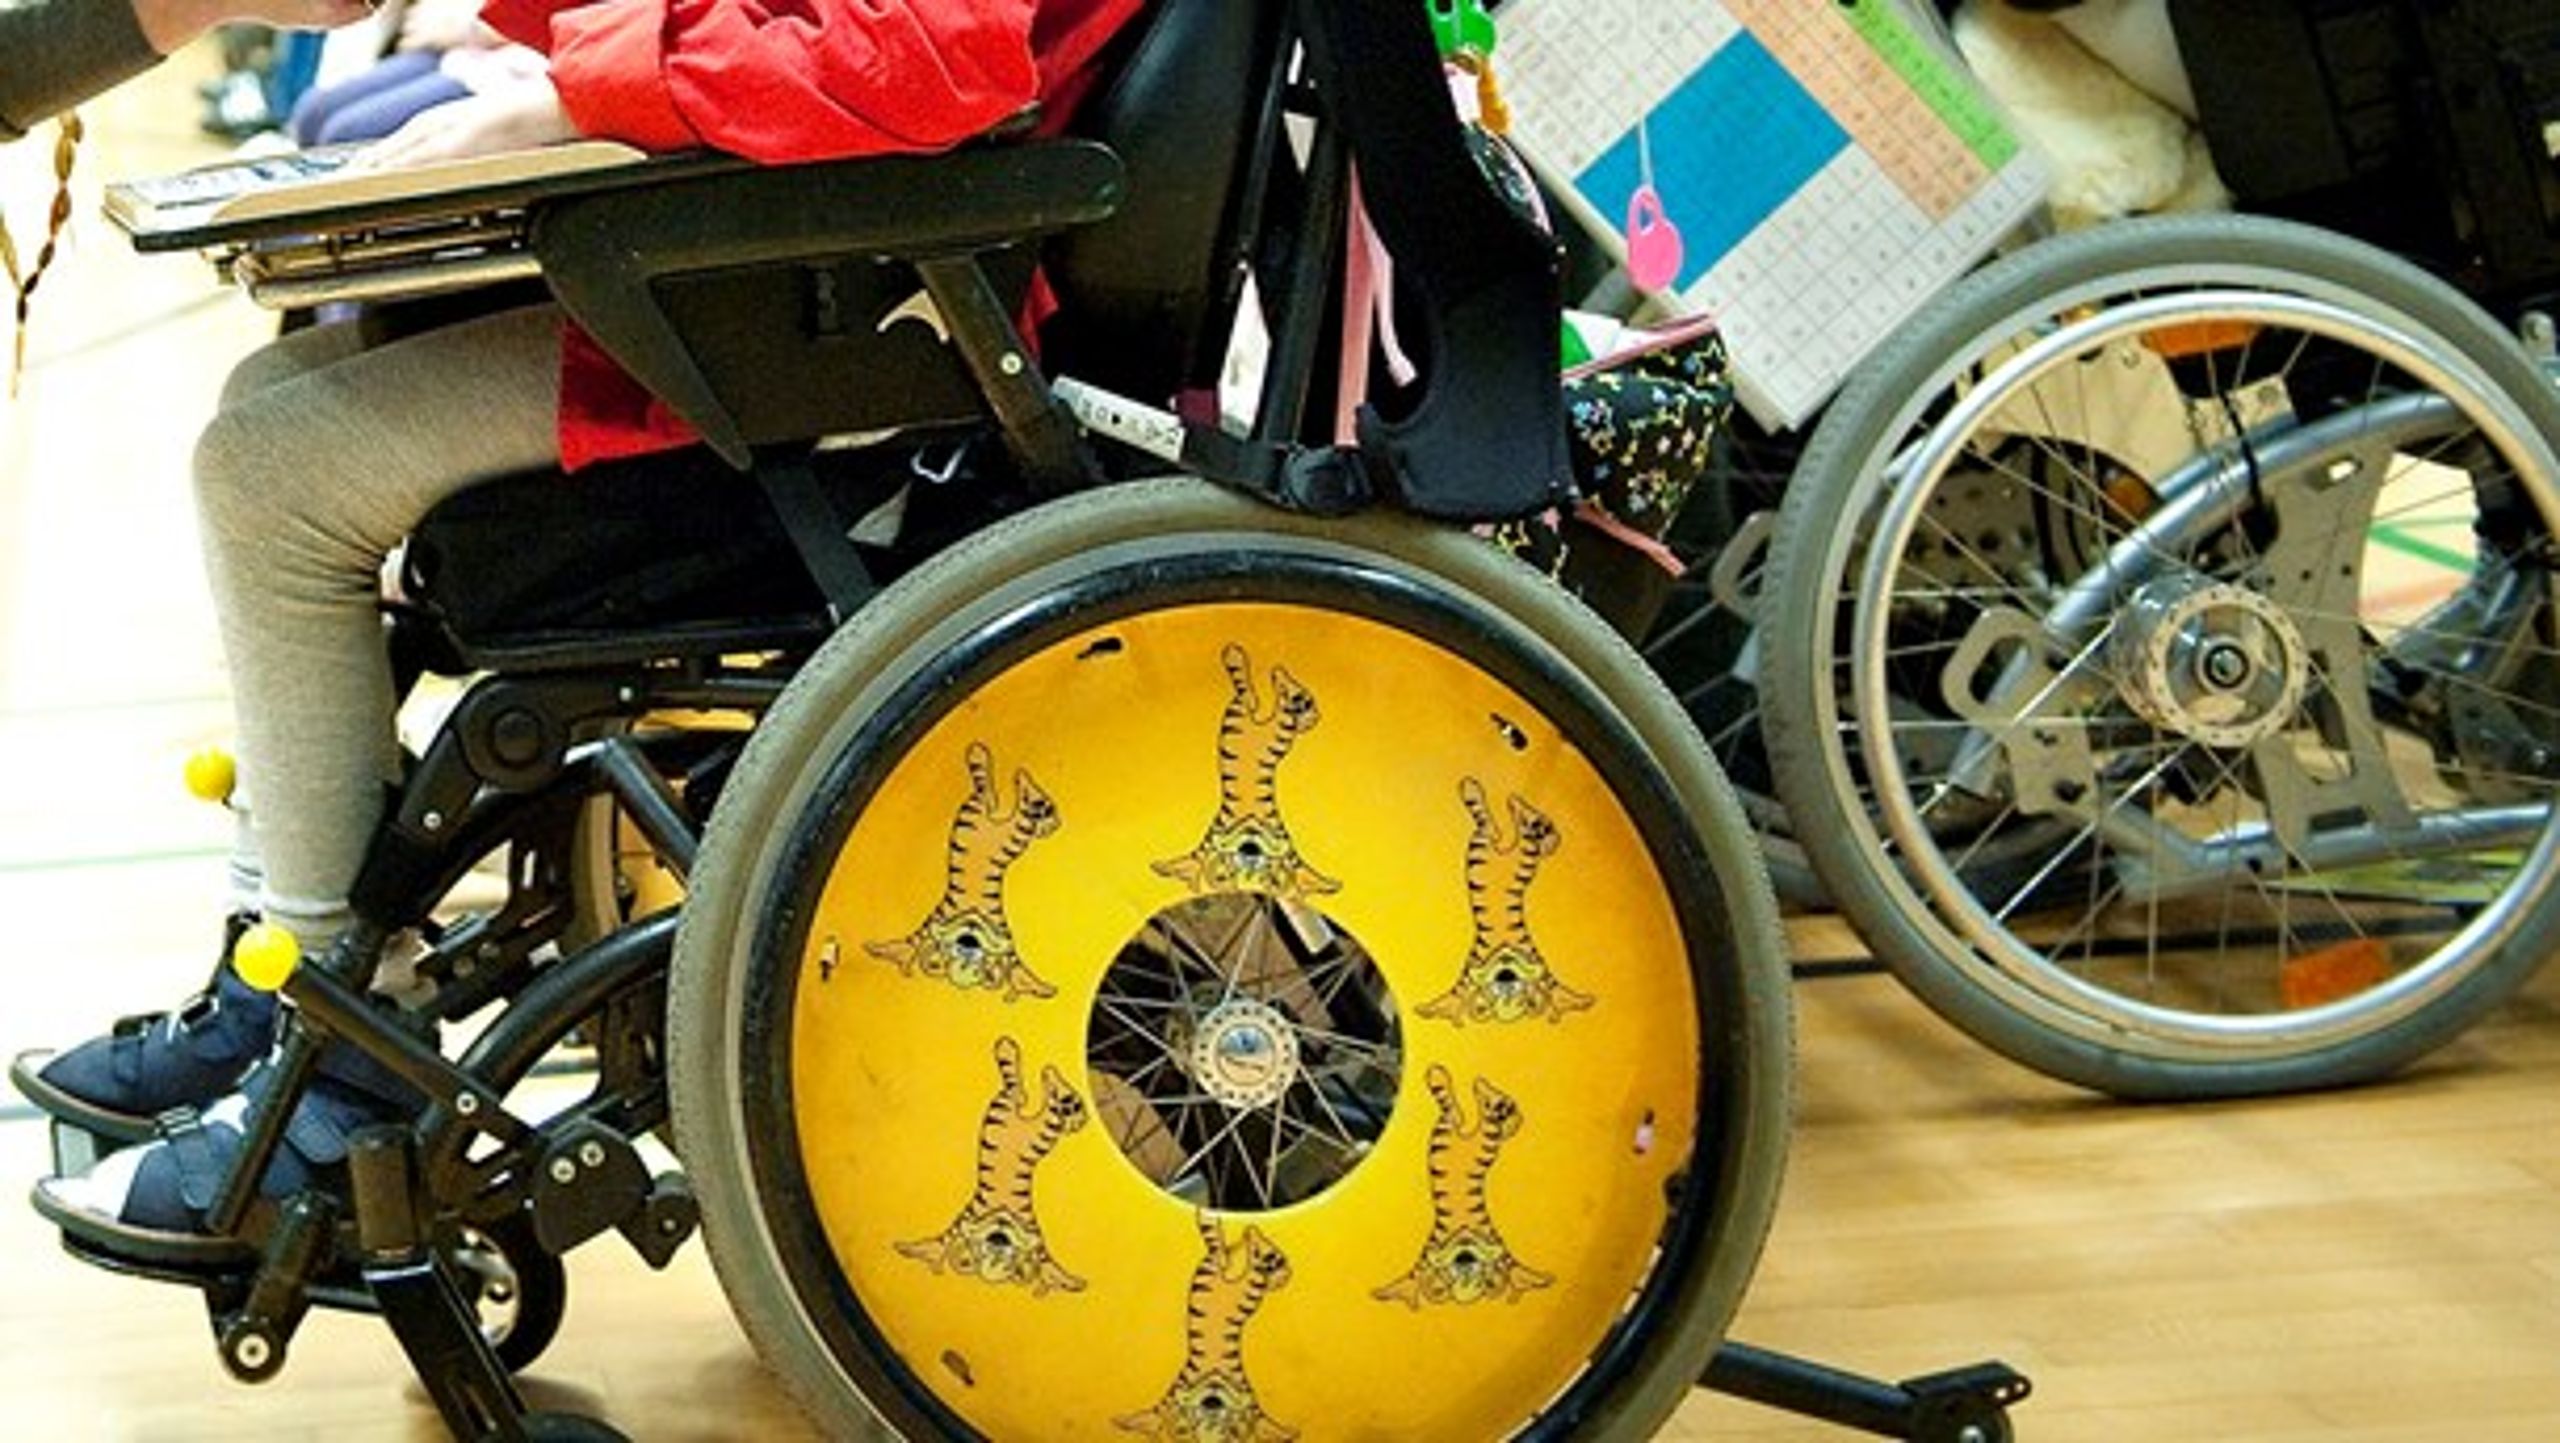 Mennesker med handicap har også værdi. Mennesker med handicap kan også bidrage, skriver Monica Lylloff fra #enmillionstemmer.